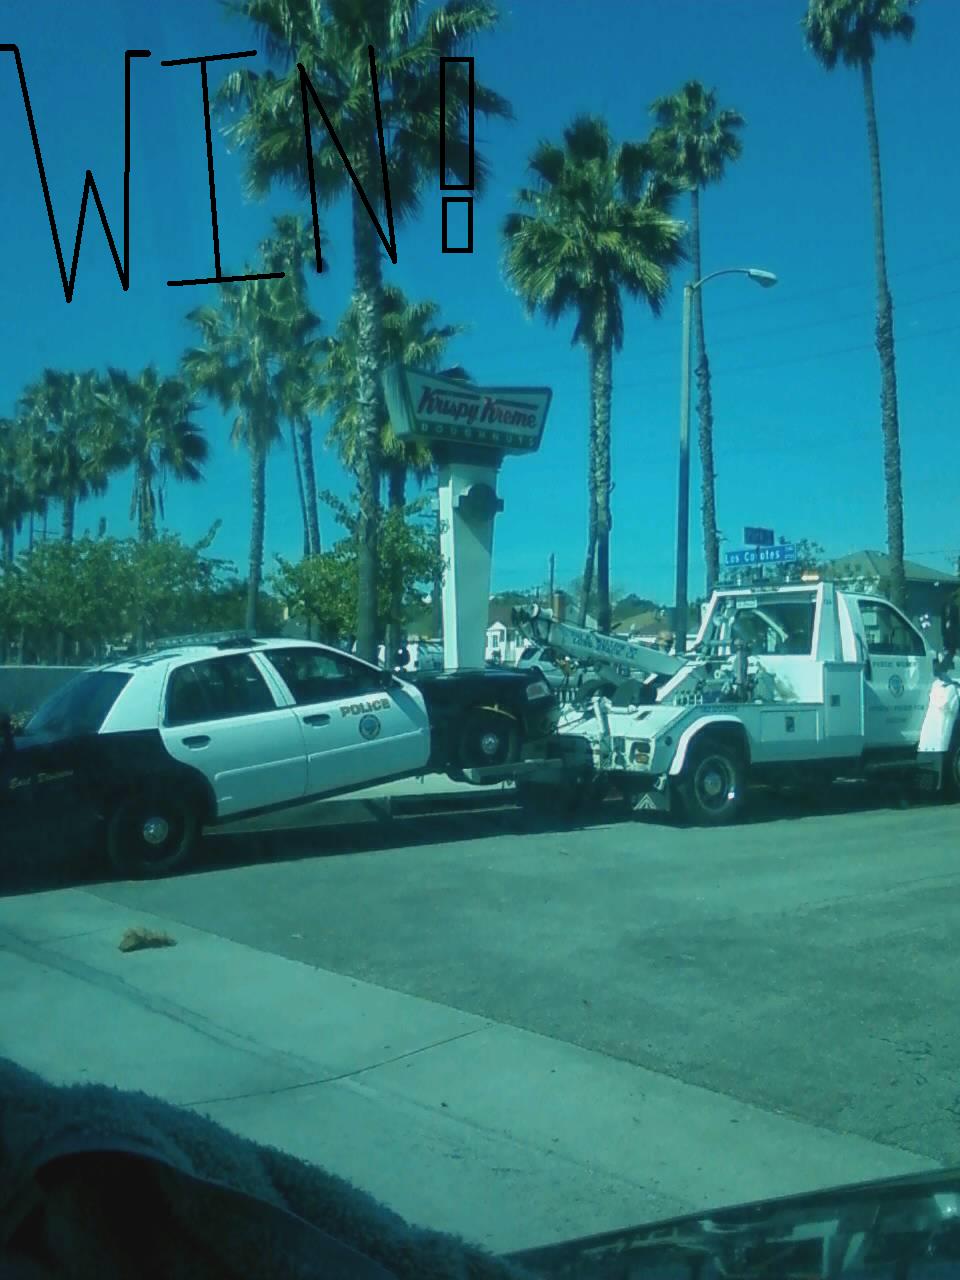 Cop getting towed outside krispy kreme.